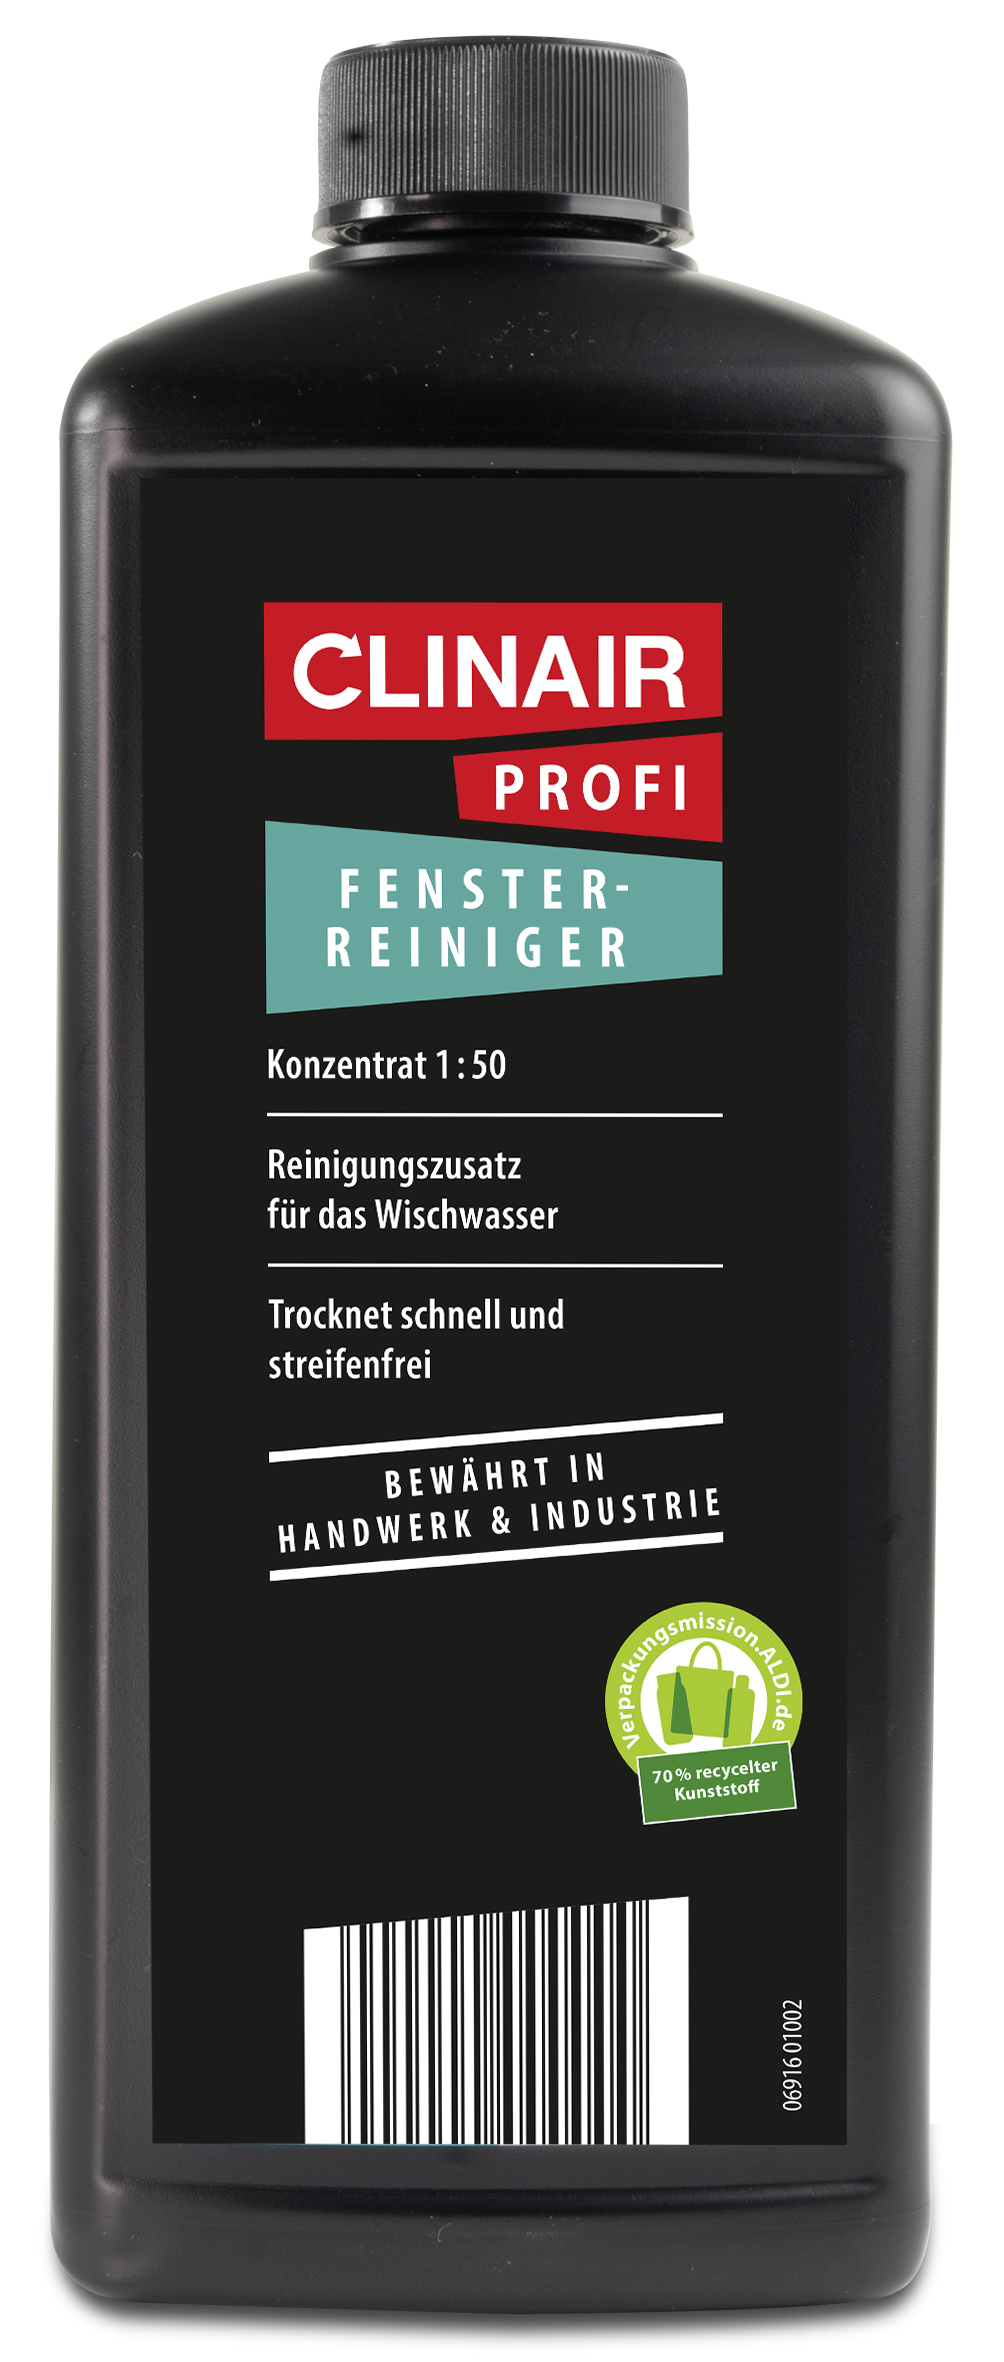 Clinair Profi Fenster-Reiniger